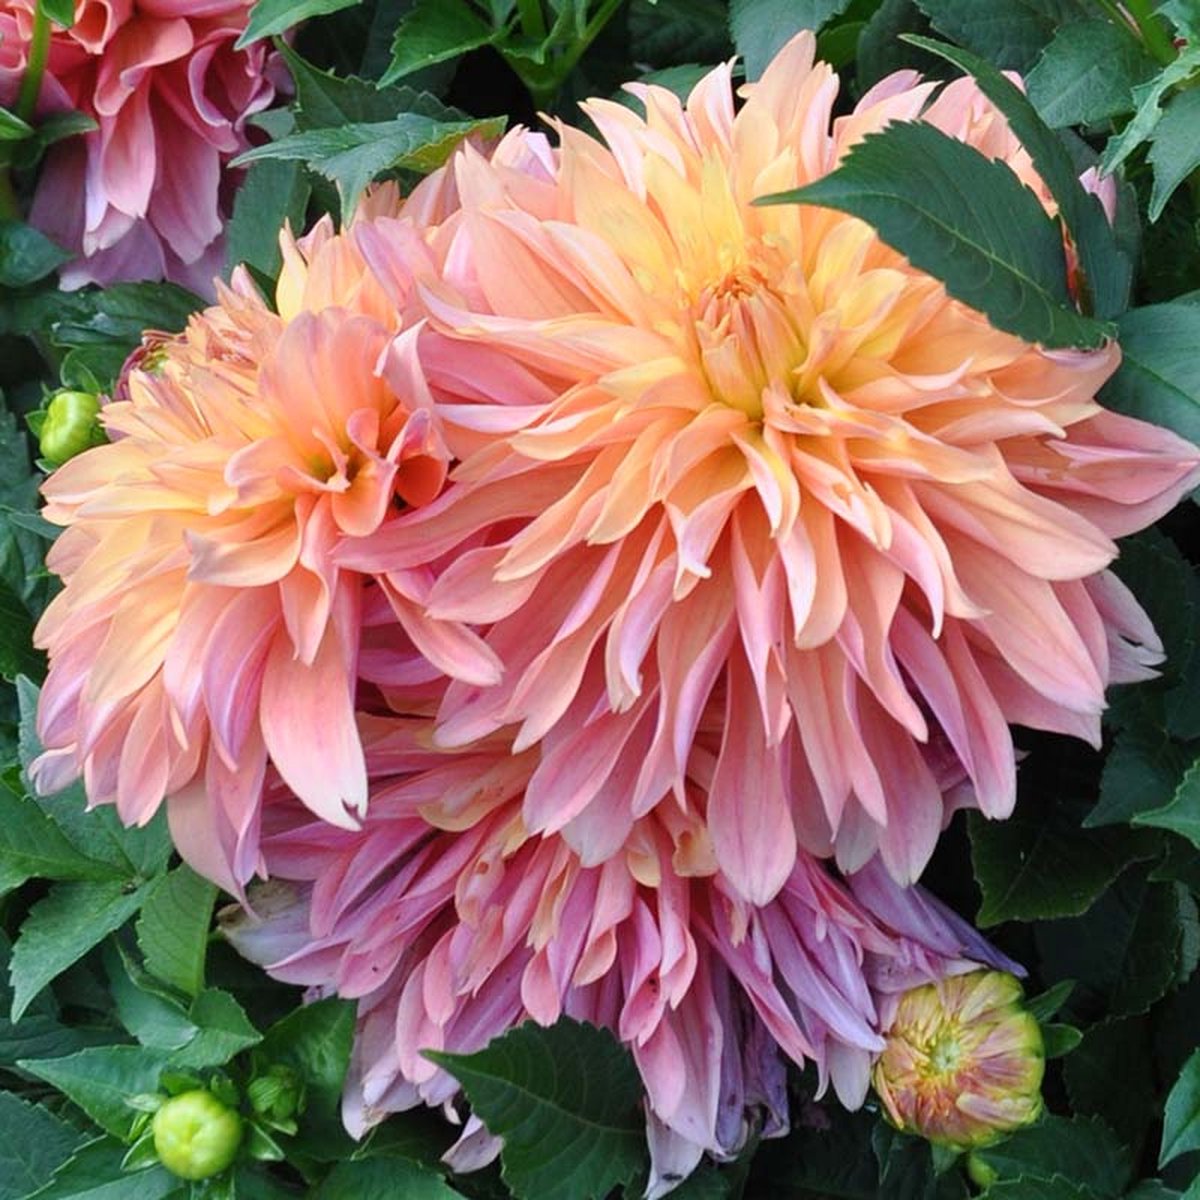 Dahlia Garden Desire | 3 stuks | Decoratieve Dahlia | Knol | Geschikt voor in Pot | Geel | Oranje | Zalm | Dahlia Knollen van Top Kwaliteit | 100% Bloeigarantie | QFB Gardening